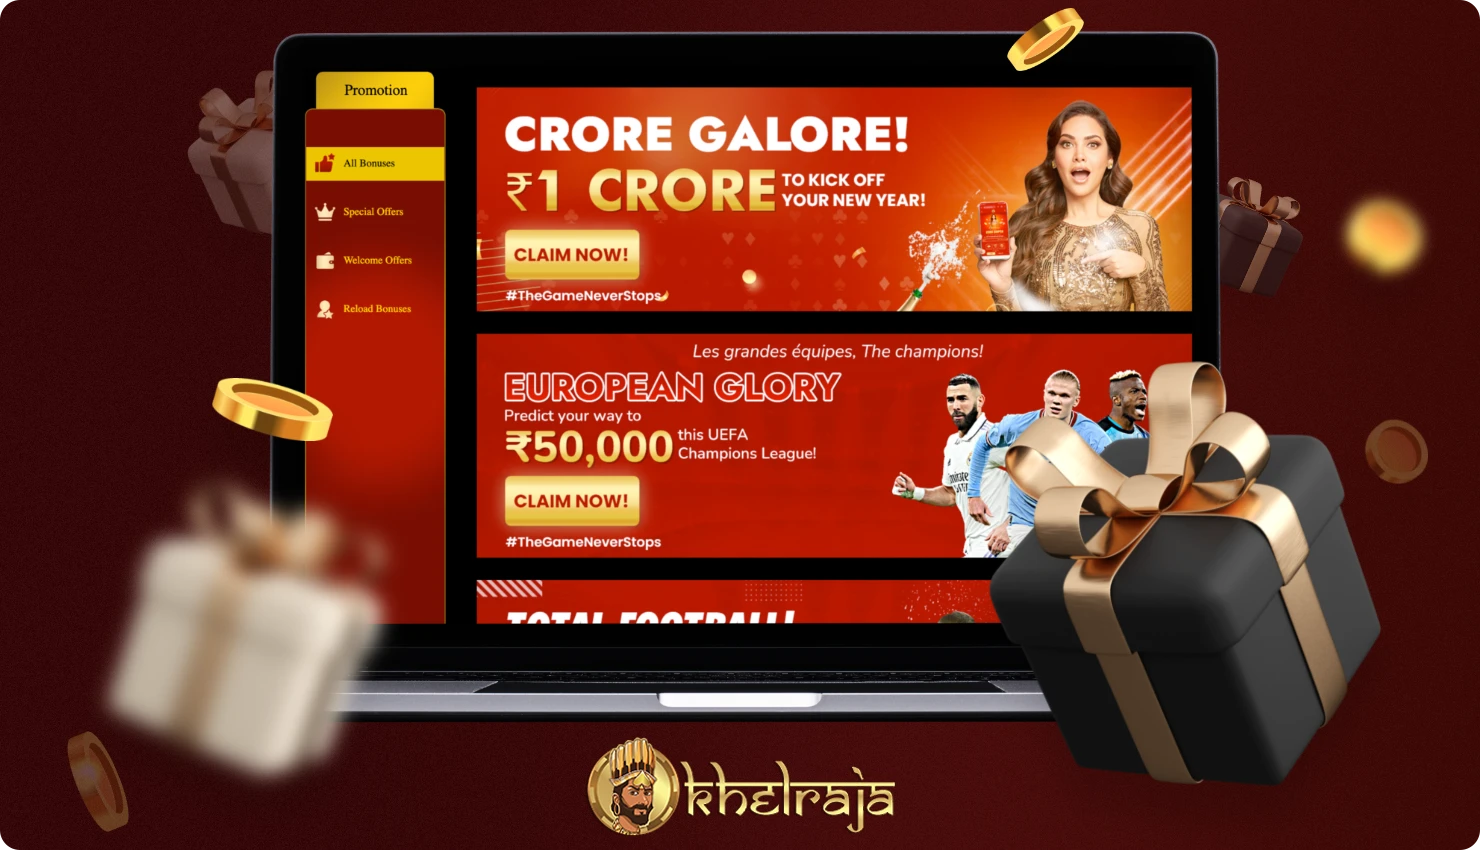 Khelraja बेटिंग कंपनी अपने भारतीय ग्राहकों को विभिन्न बोनस और प्रमोशन प्रदान करती है